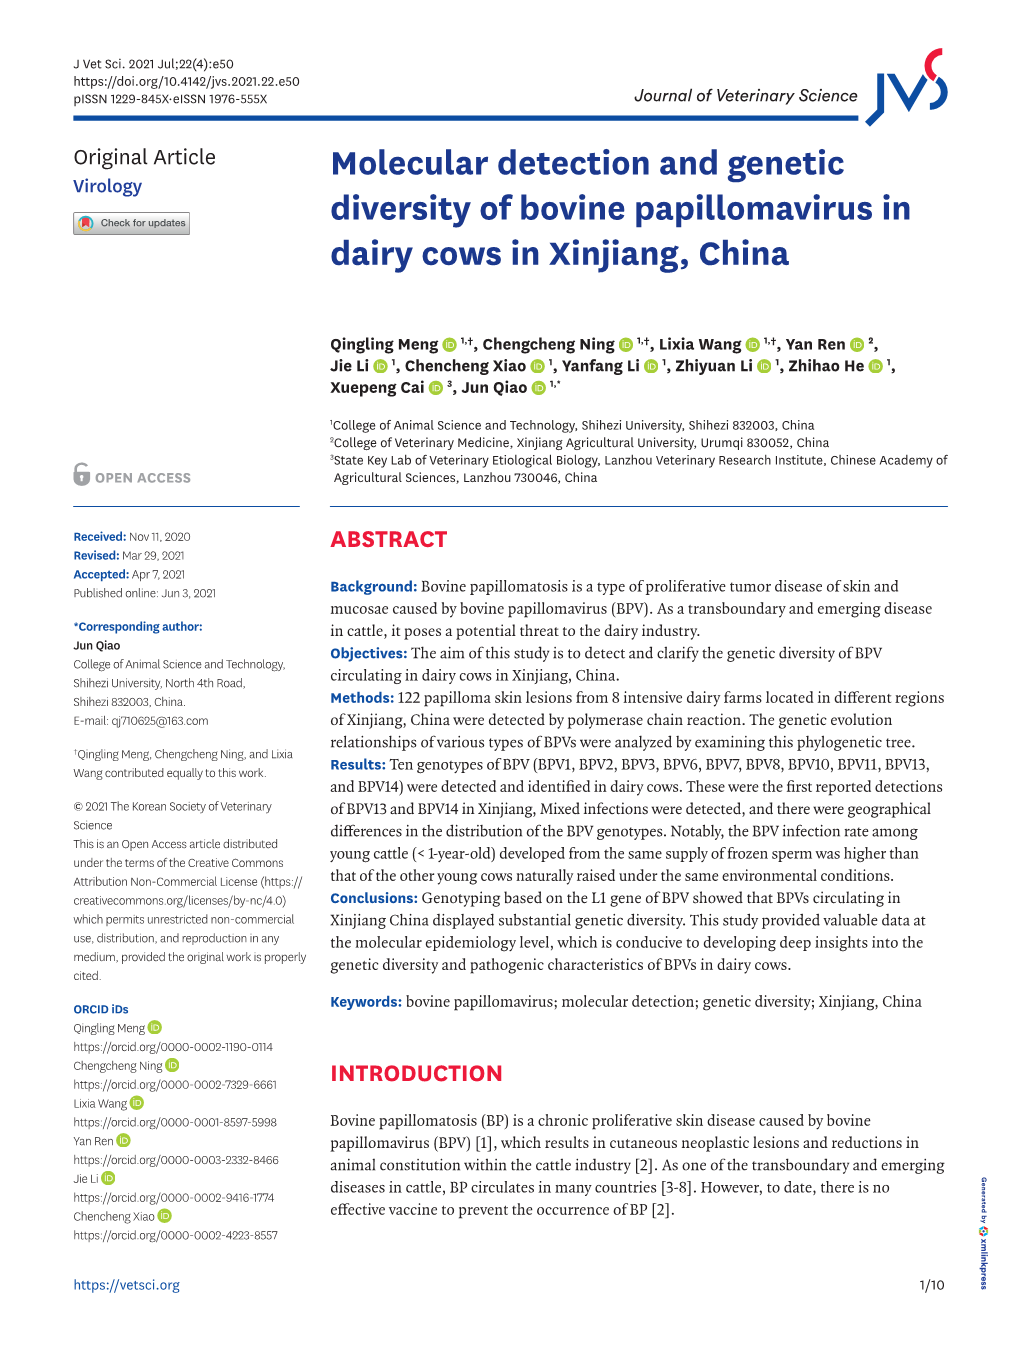 Molecular Detection and Genetic Diversity of Bovine Papillomavirus In